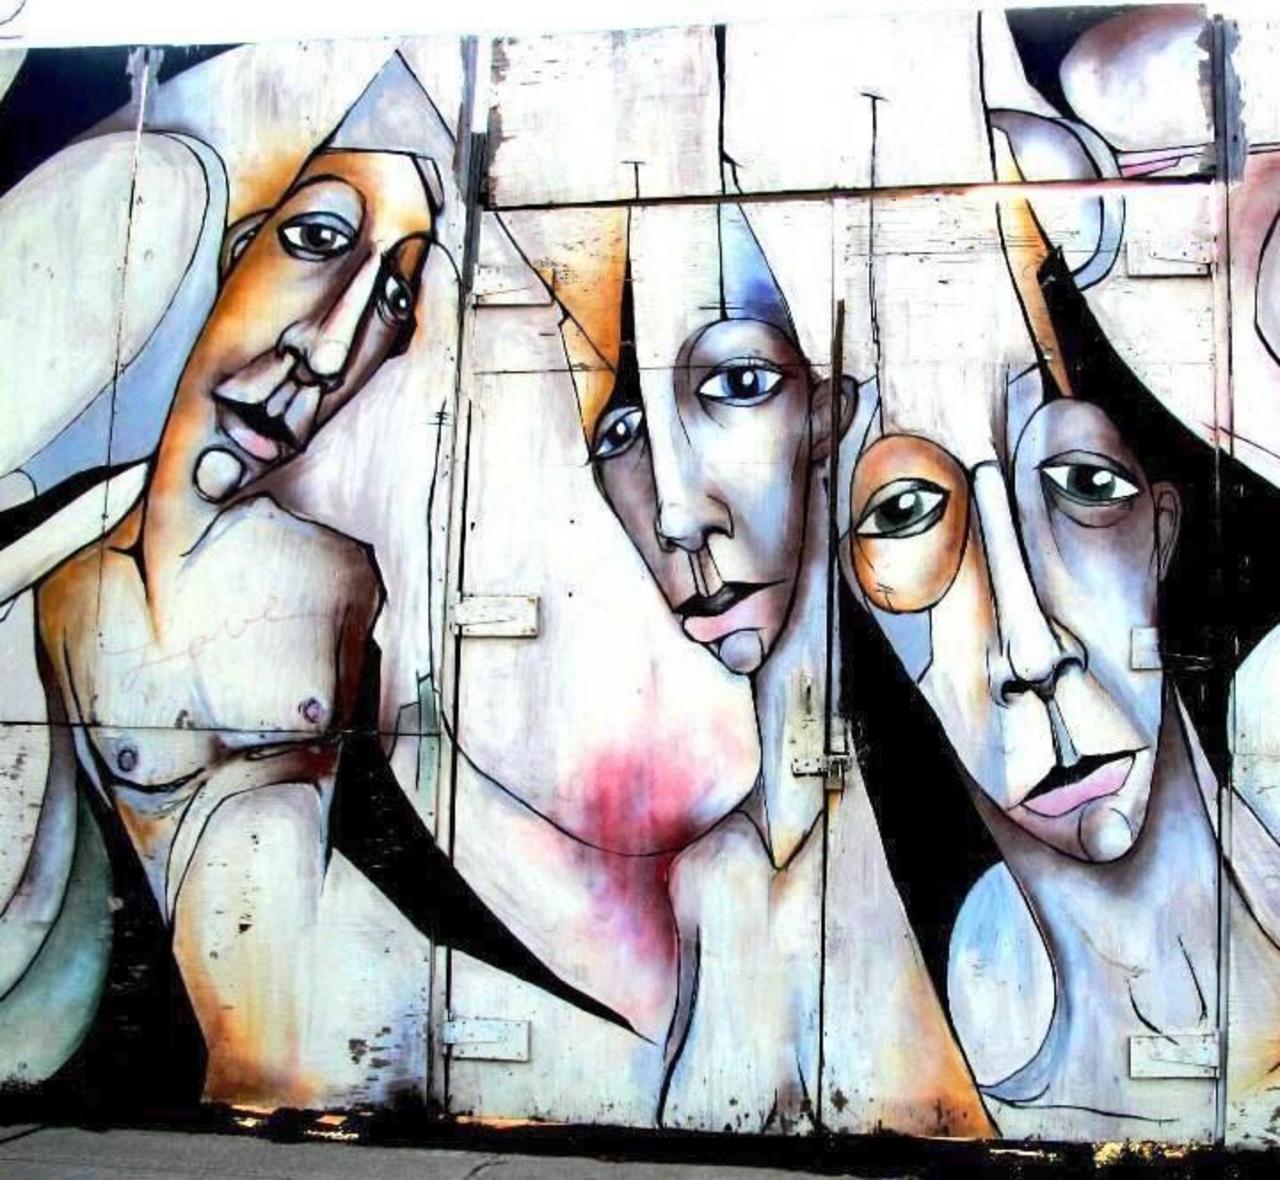 “@5putnik1: Art Outside • @loolek: @Pitchuskita: #streetart #brooklyn #NewYork #art #graffiti #funky #dope . : http://t.co/U9CtV2Wgq1